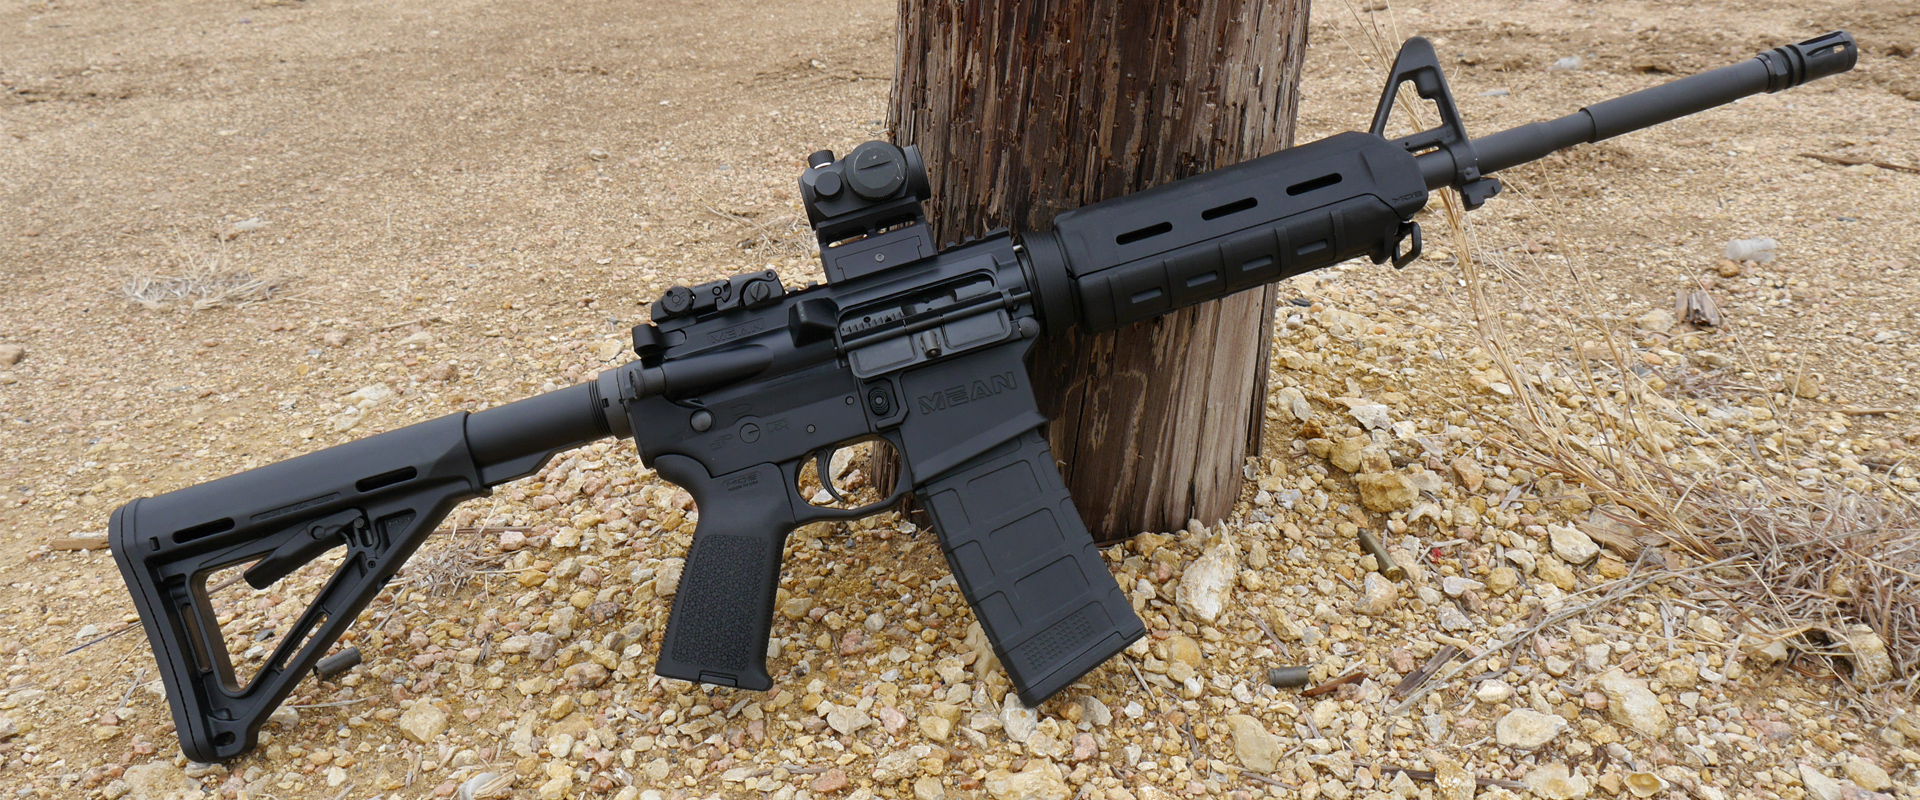 MA Hybrid AR-15 Rifle | Mean Arms